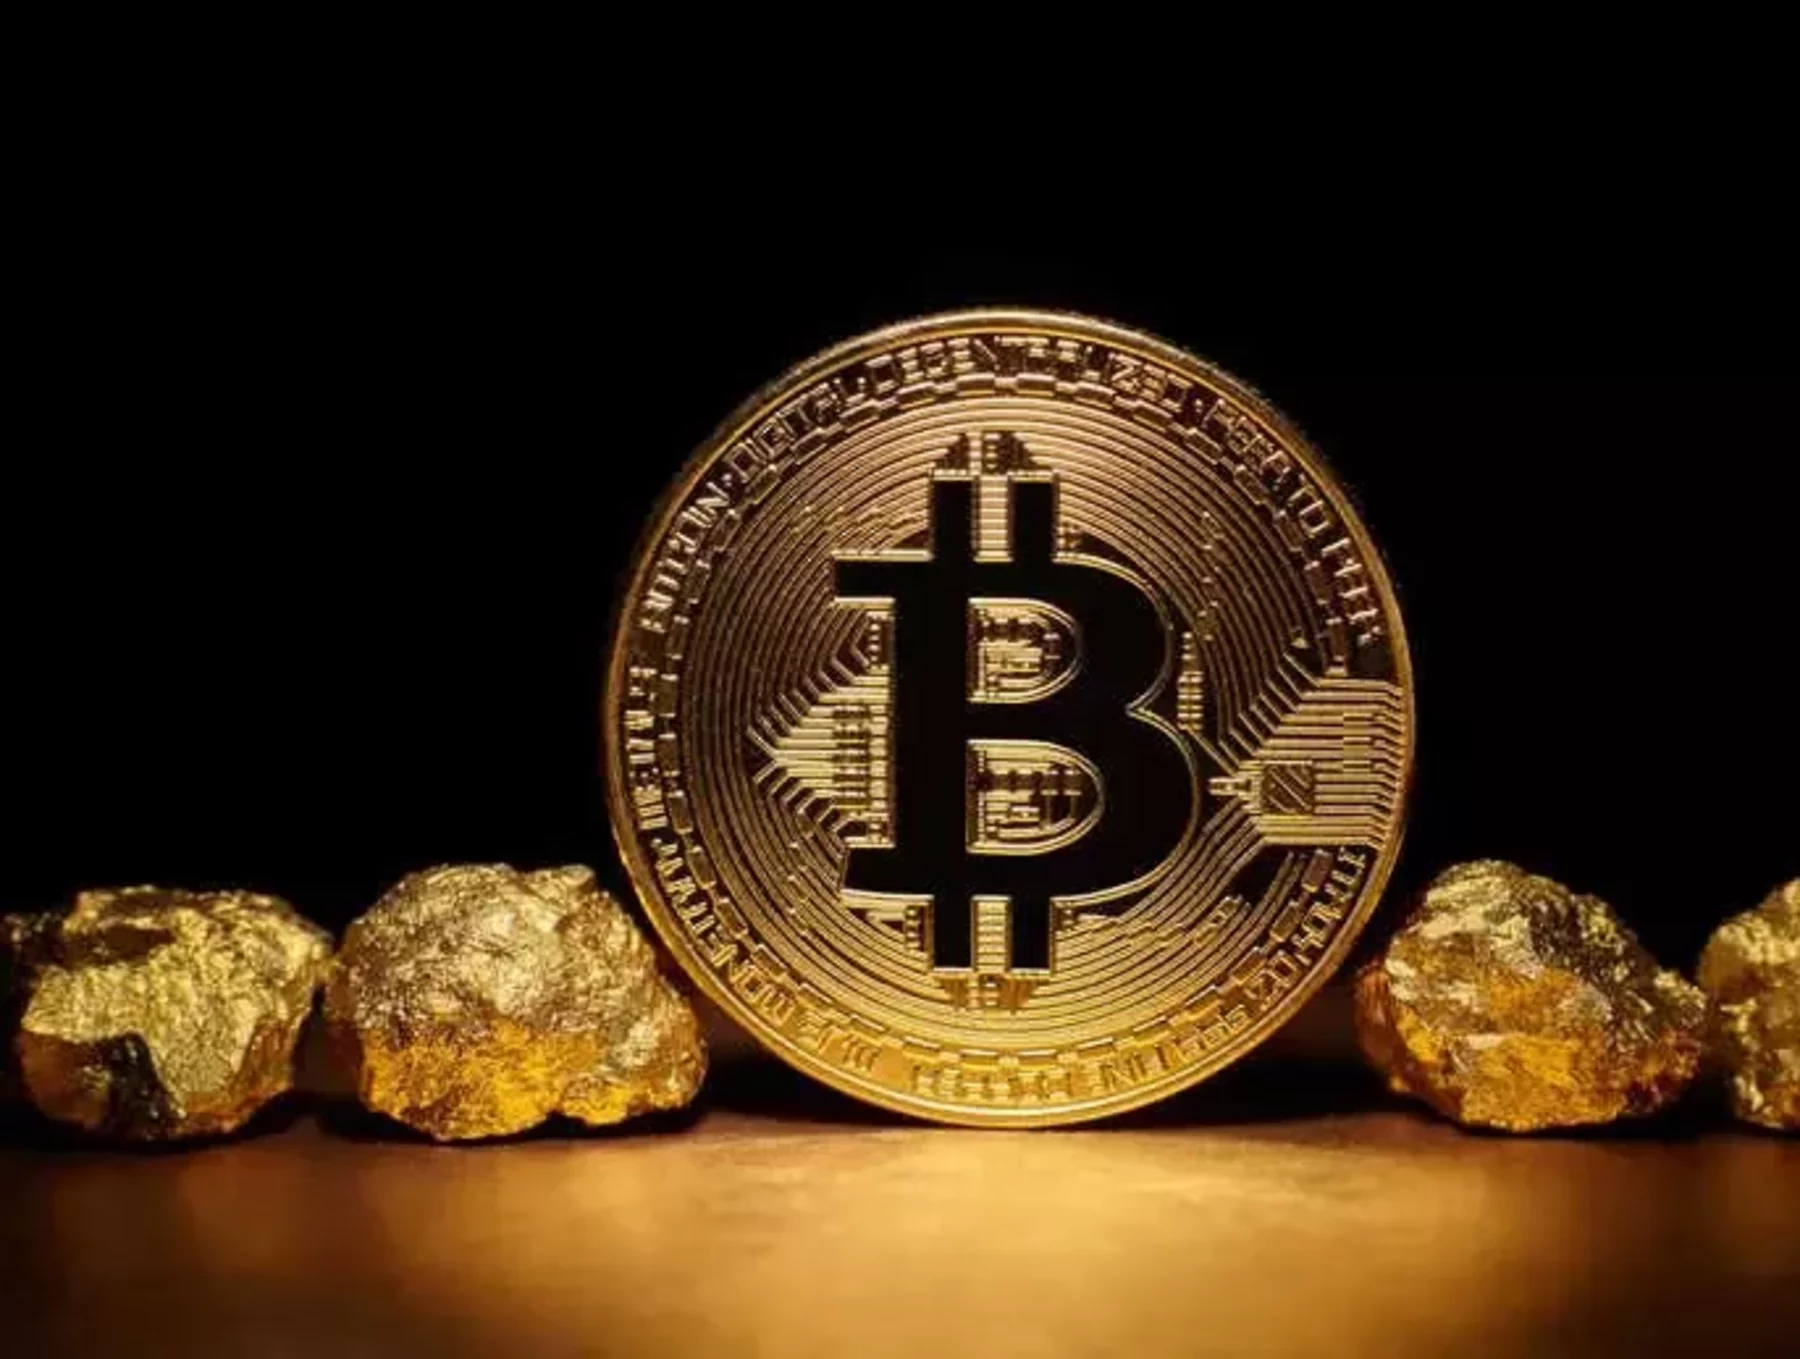 Jack ma bitcoin investicija kaip užsidirbti didelių pinigų akcijose